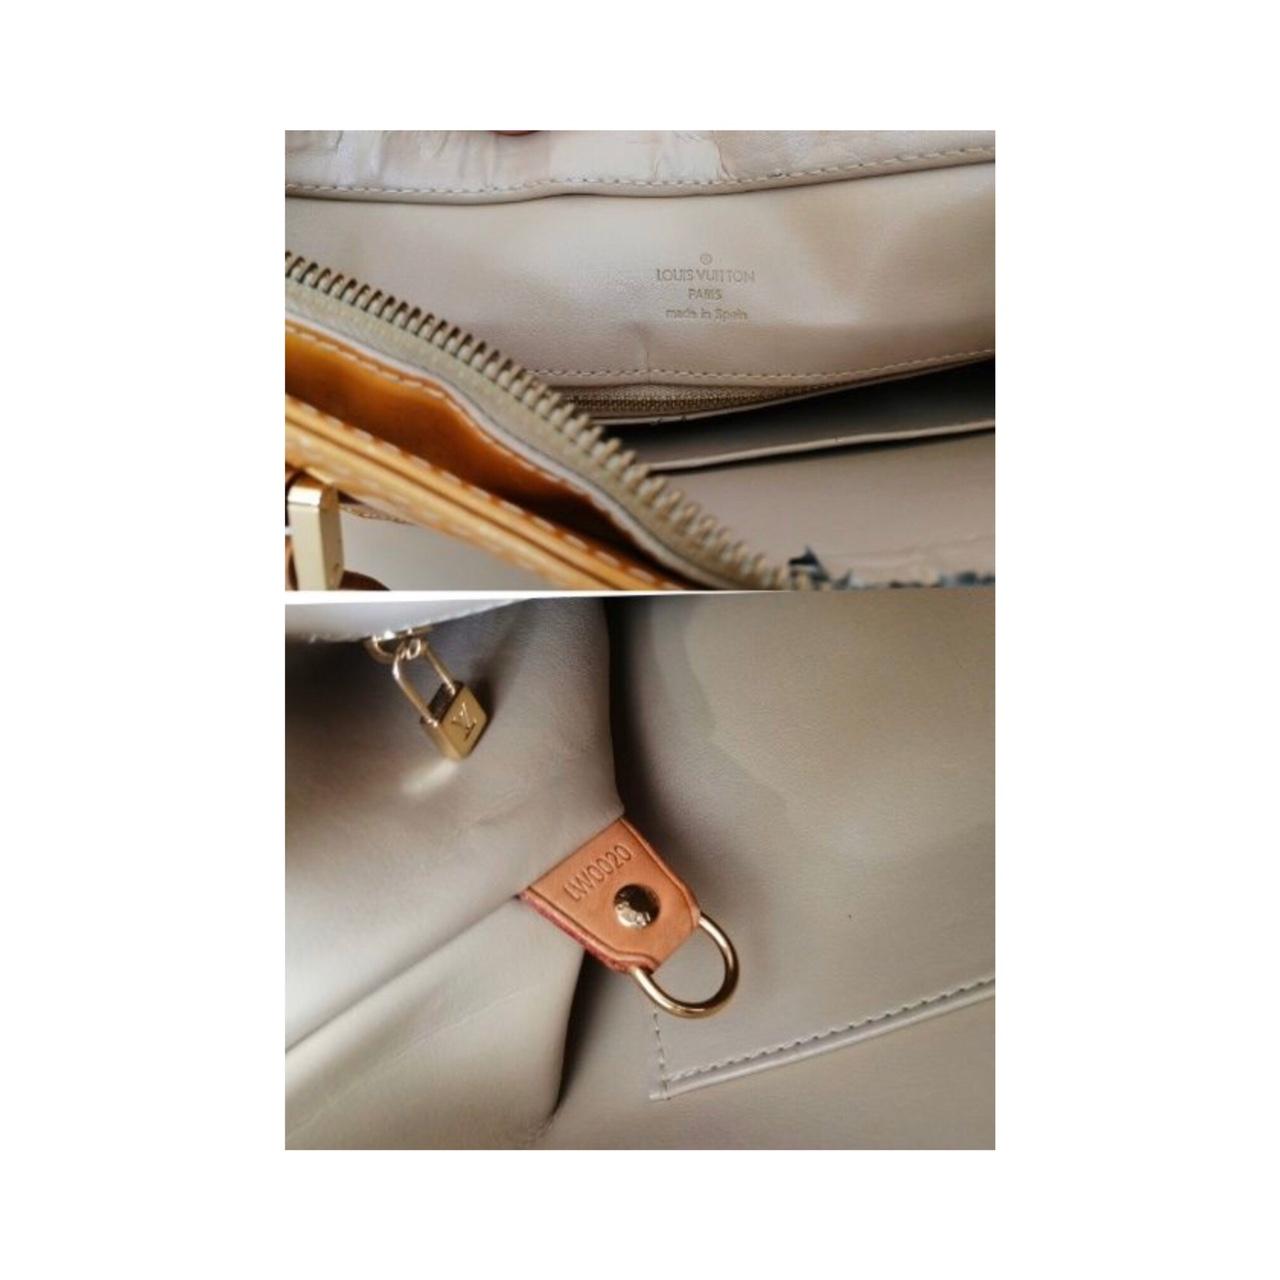 AUTHENTIC Louis Vuitton back pack 9/10 condition - Depop